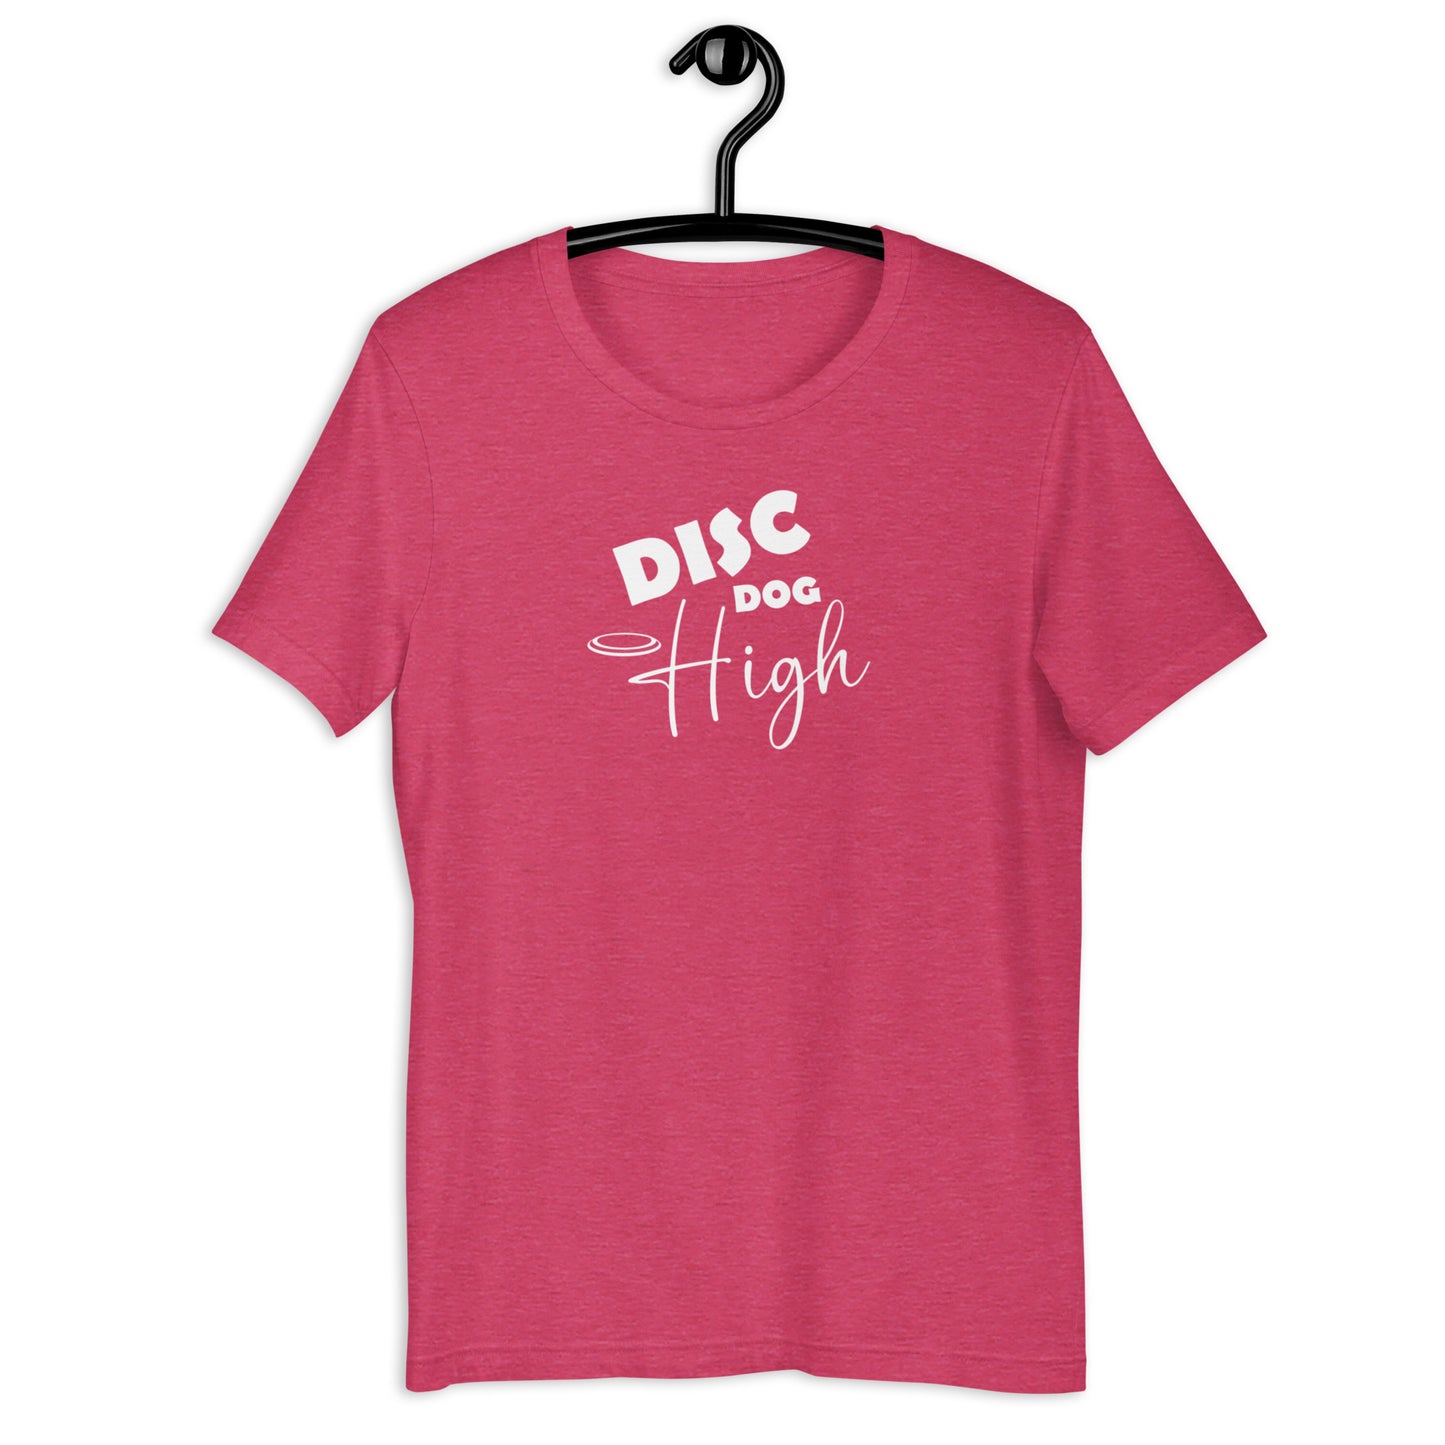 DISC DOG HIGH - Unisex t-shirt